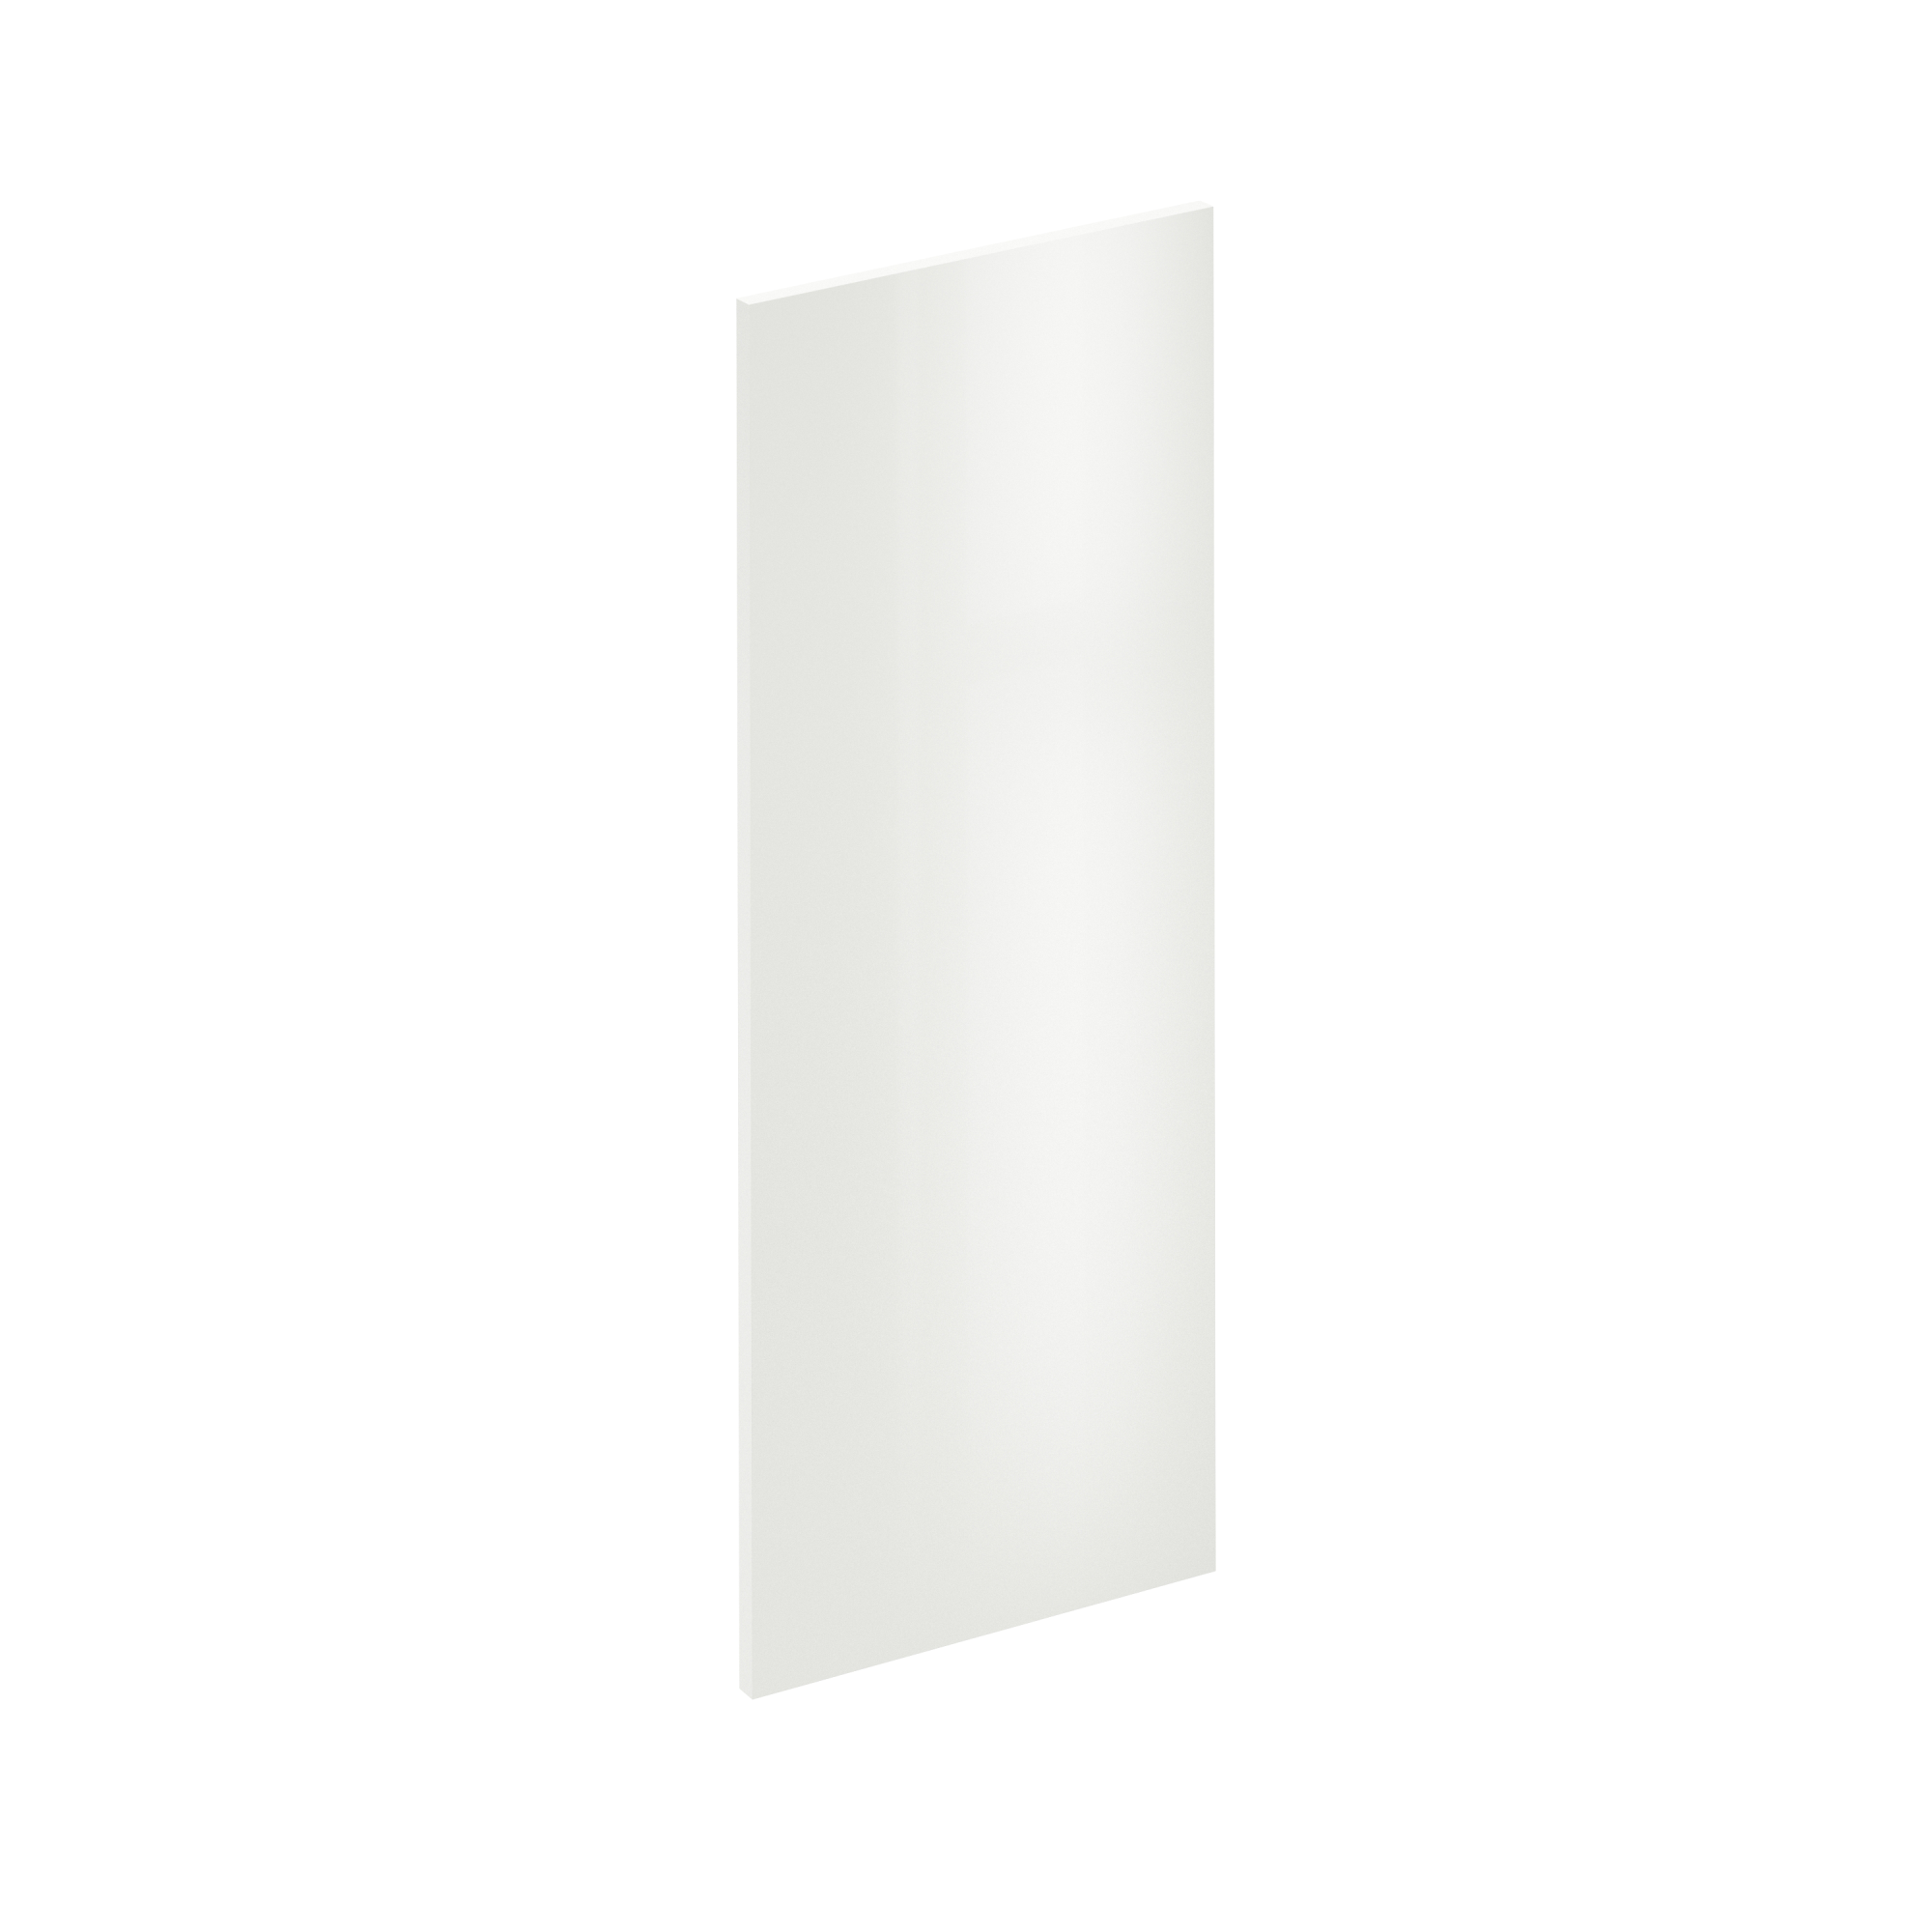 Puerta para mueble de cocina sevilla blanco brillo h 102.4 x l 40 cm